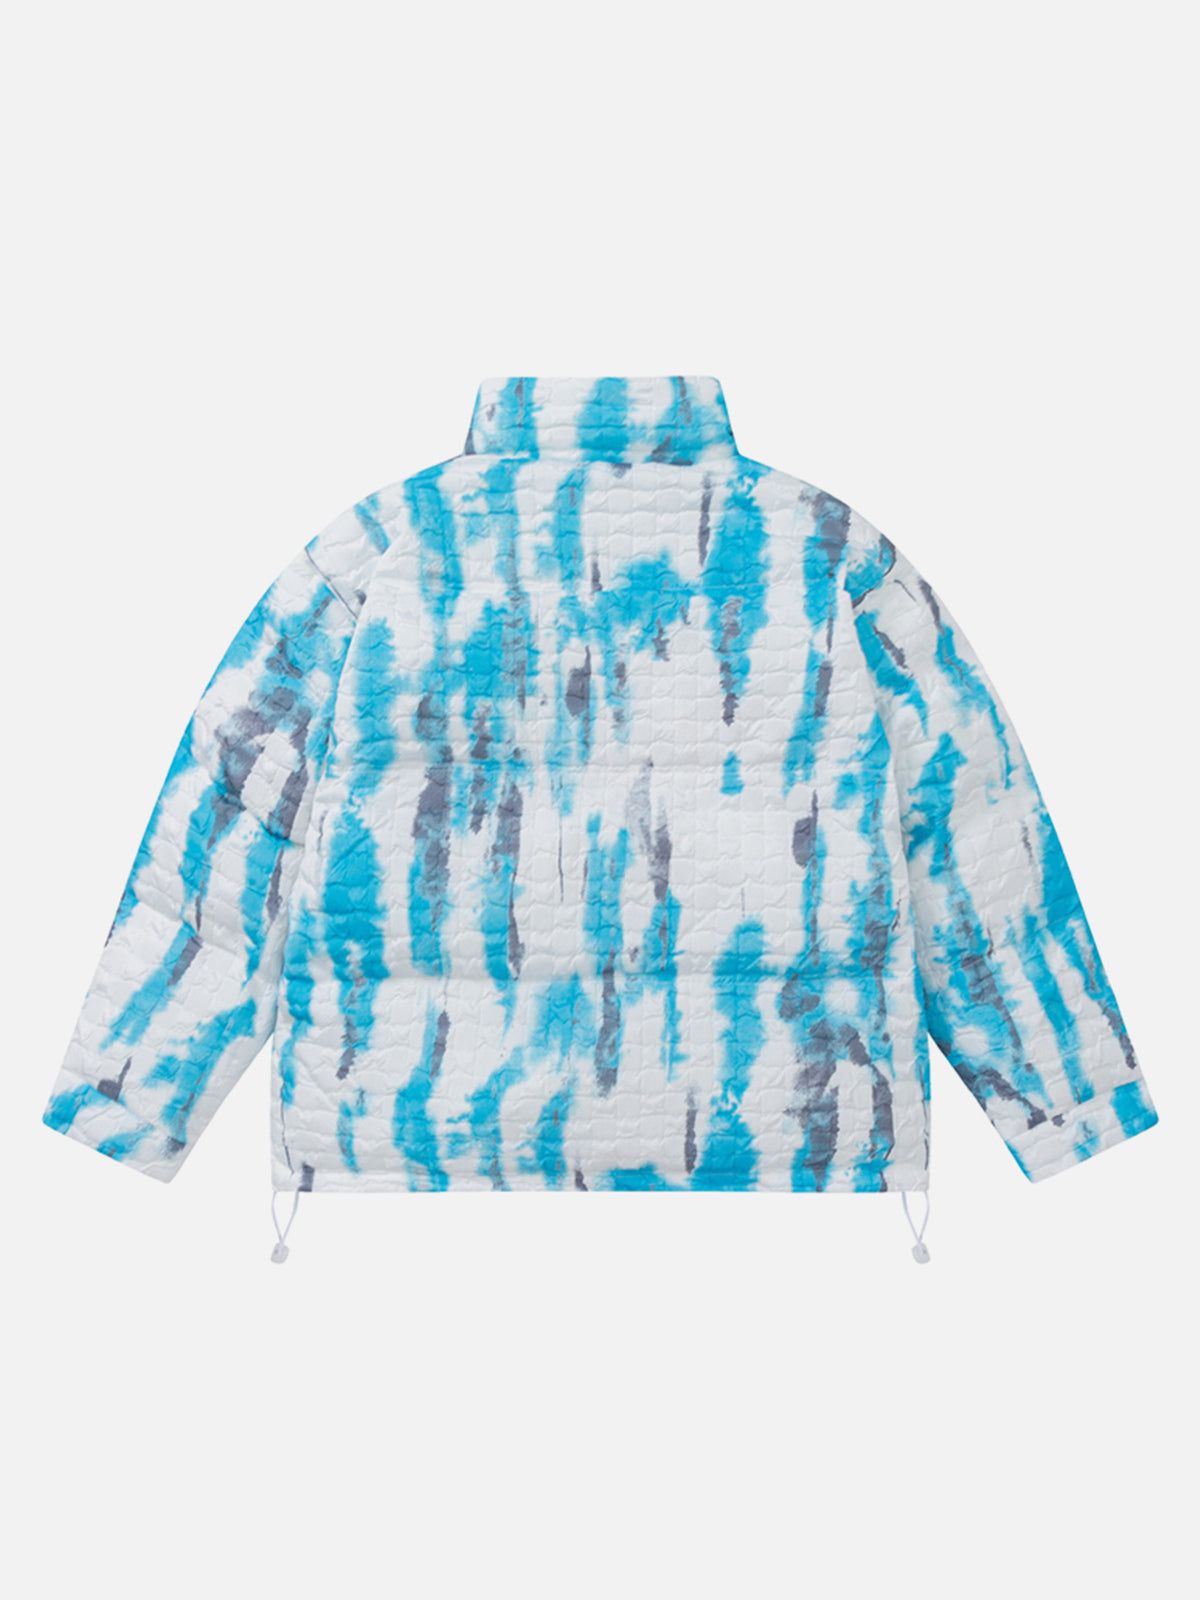 LUXENFY™ - Tie Dye Winter Coat luxenfy.com